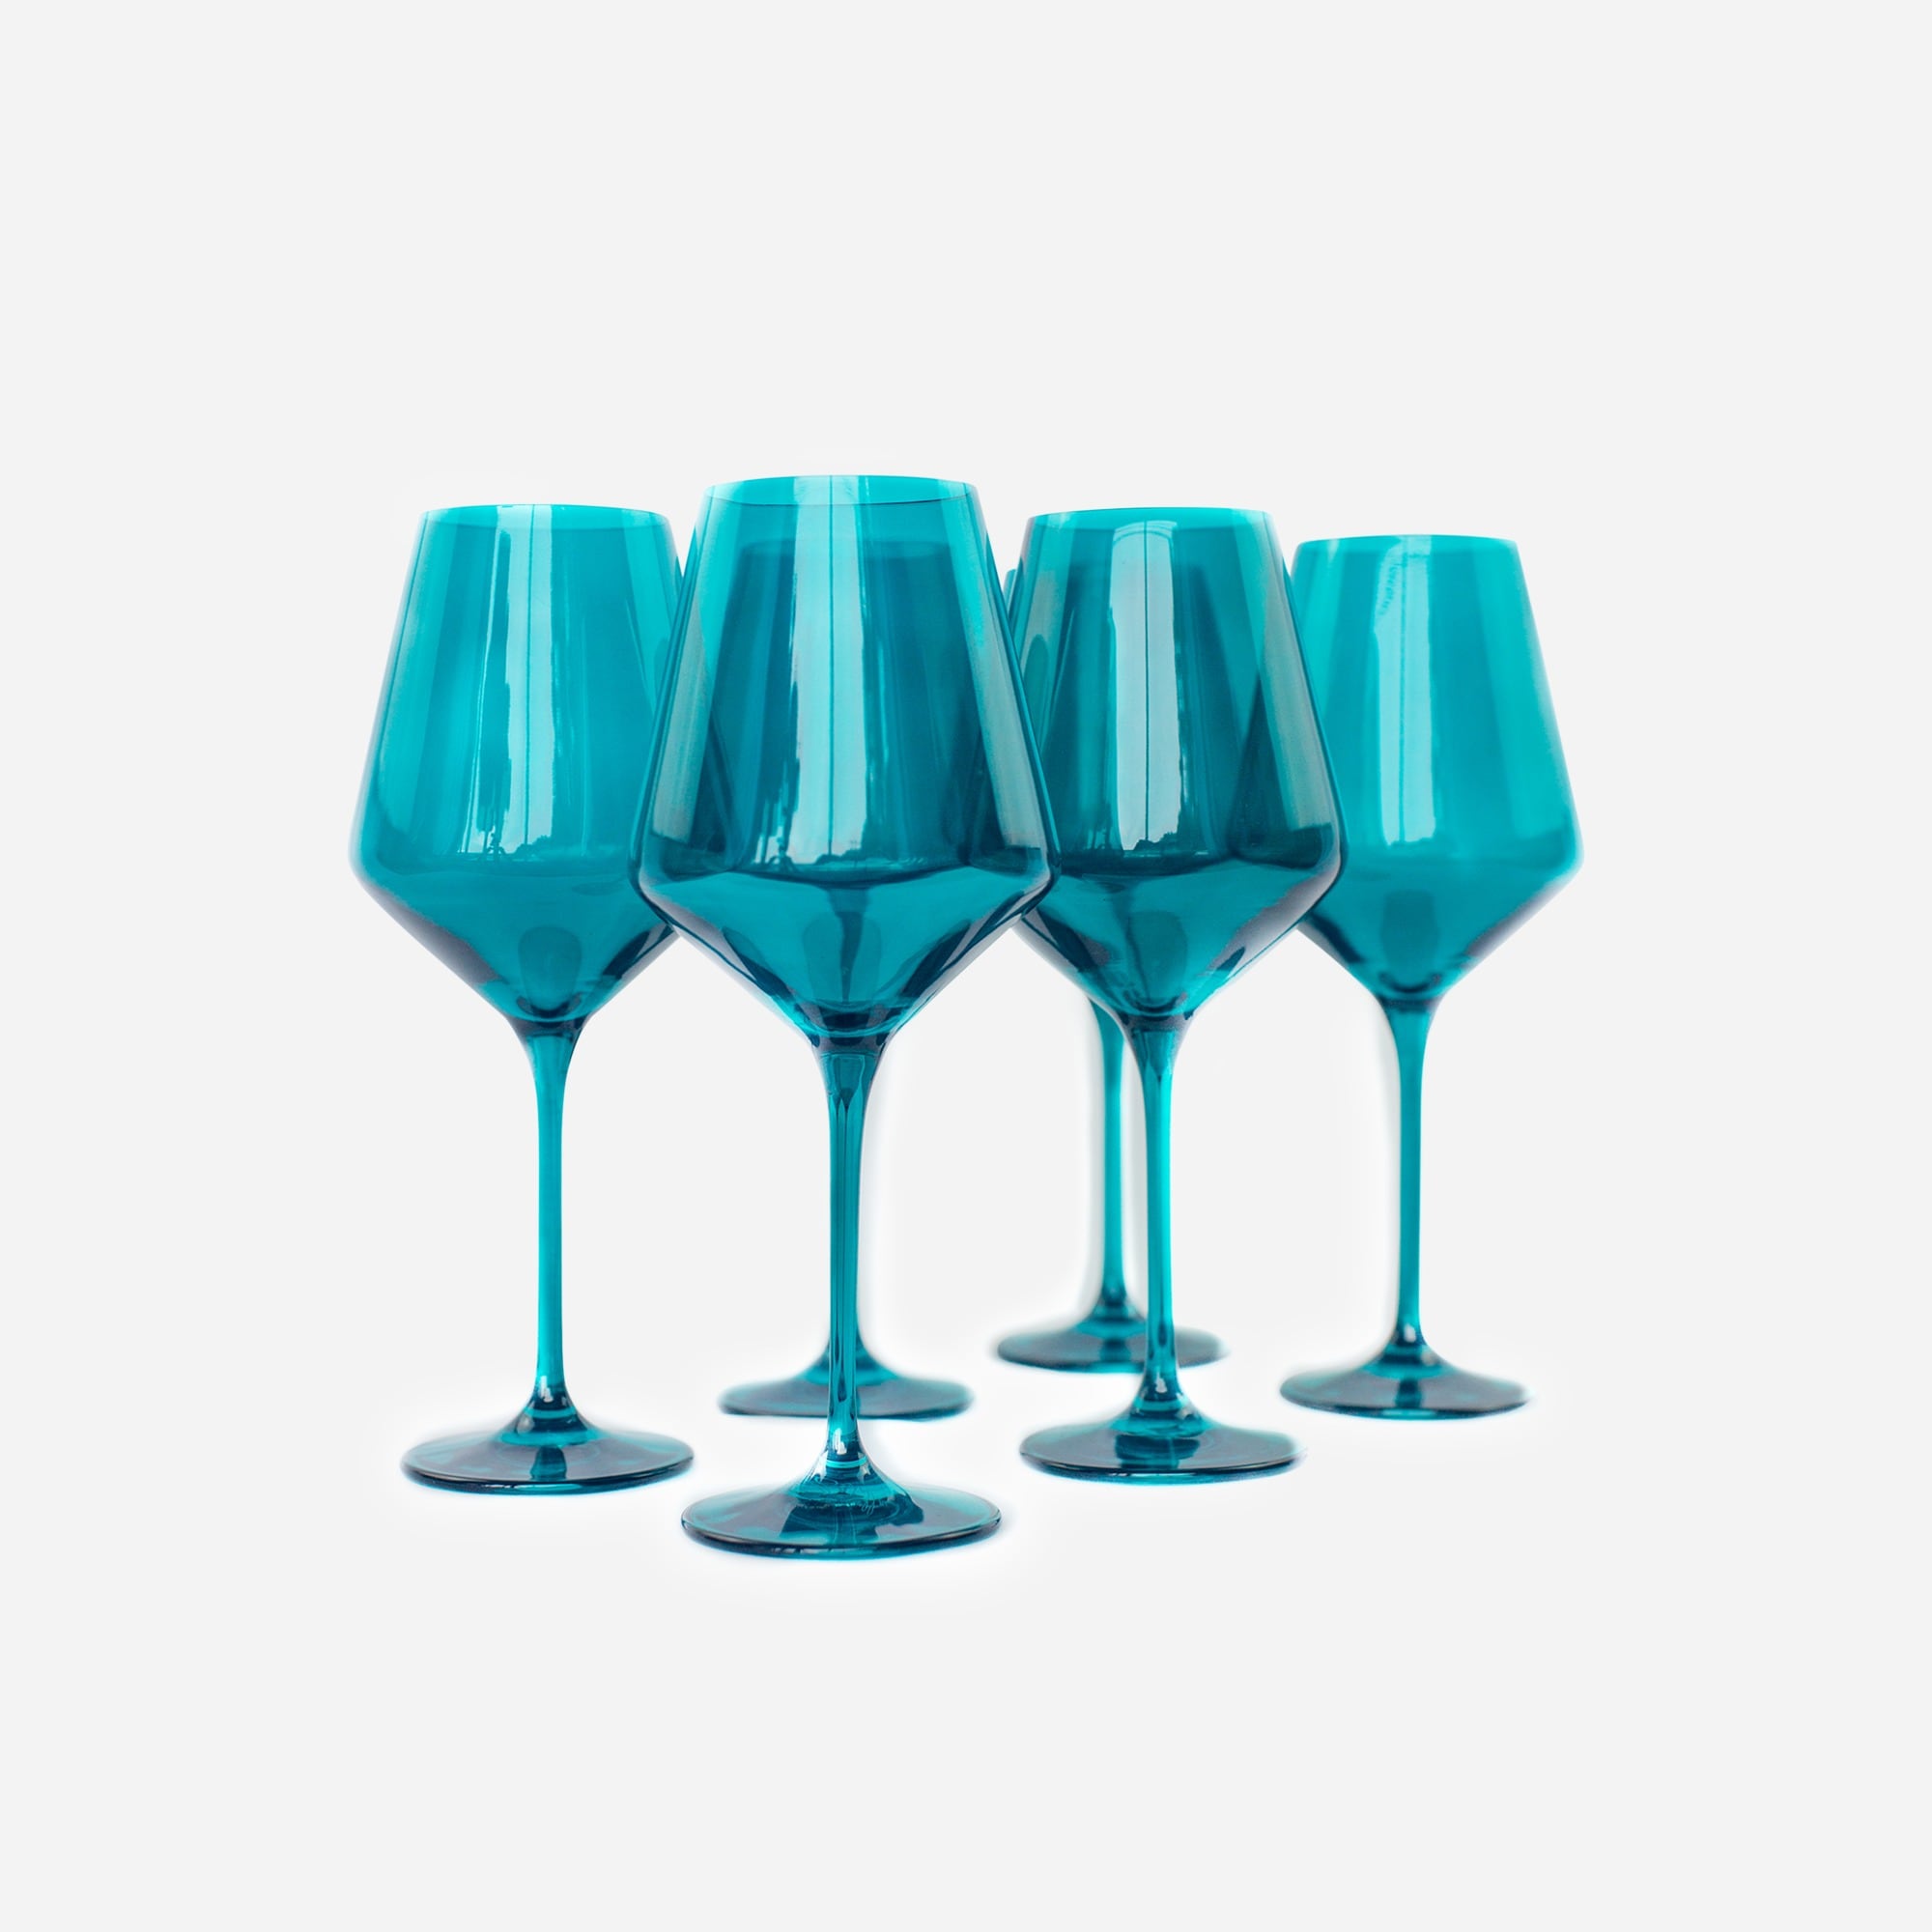 Estelle Colored Wine Stemware - Set of 6 {Red} – Estelle Colored Glass